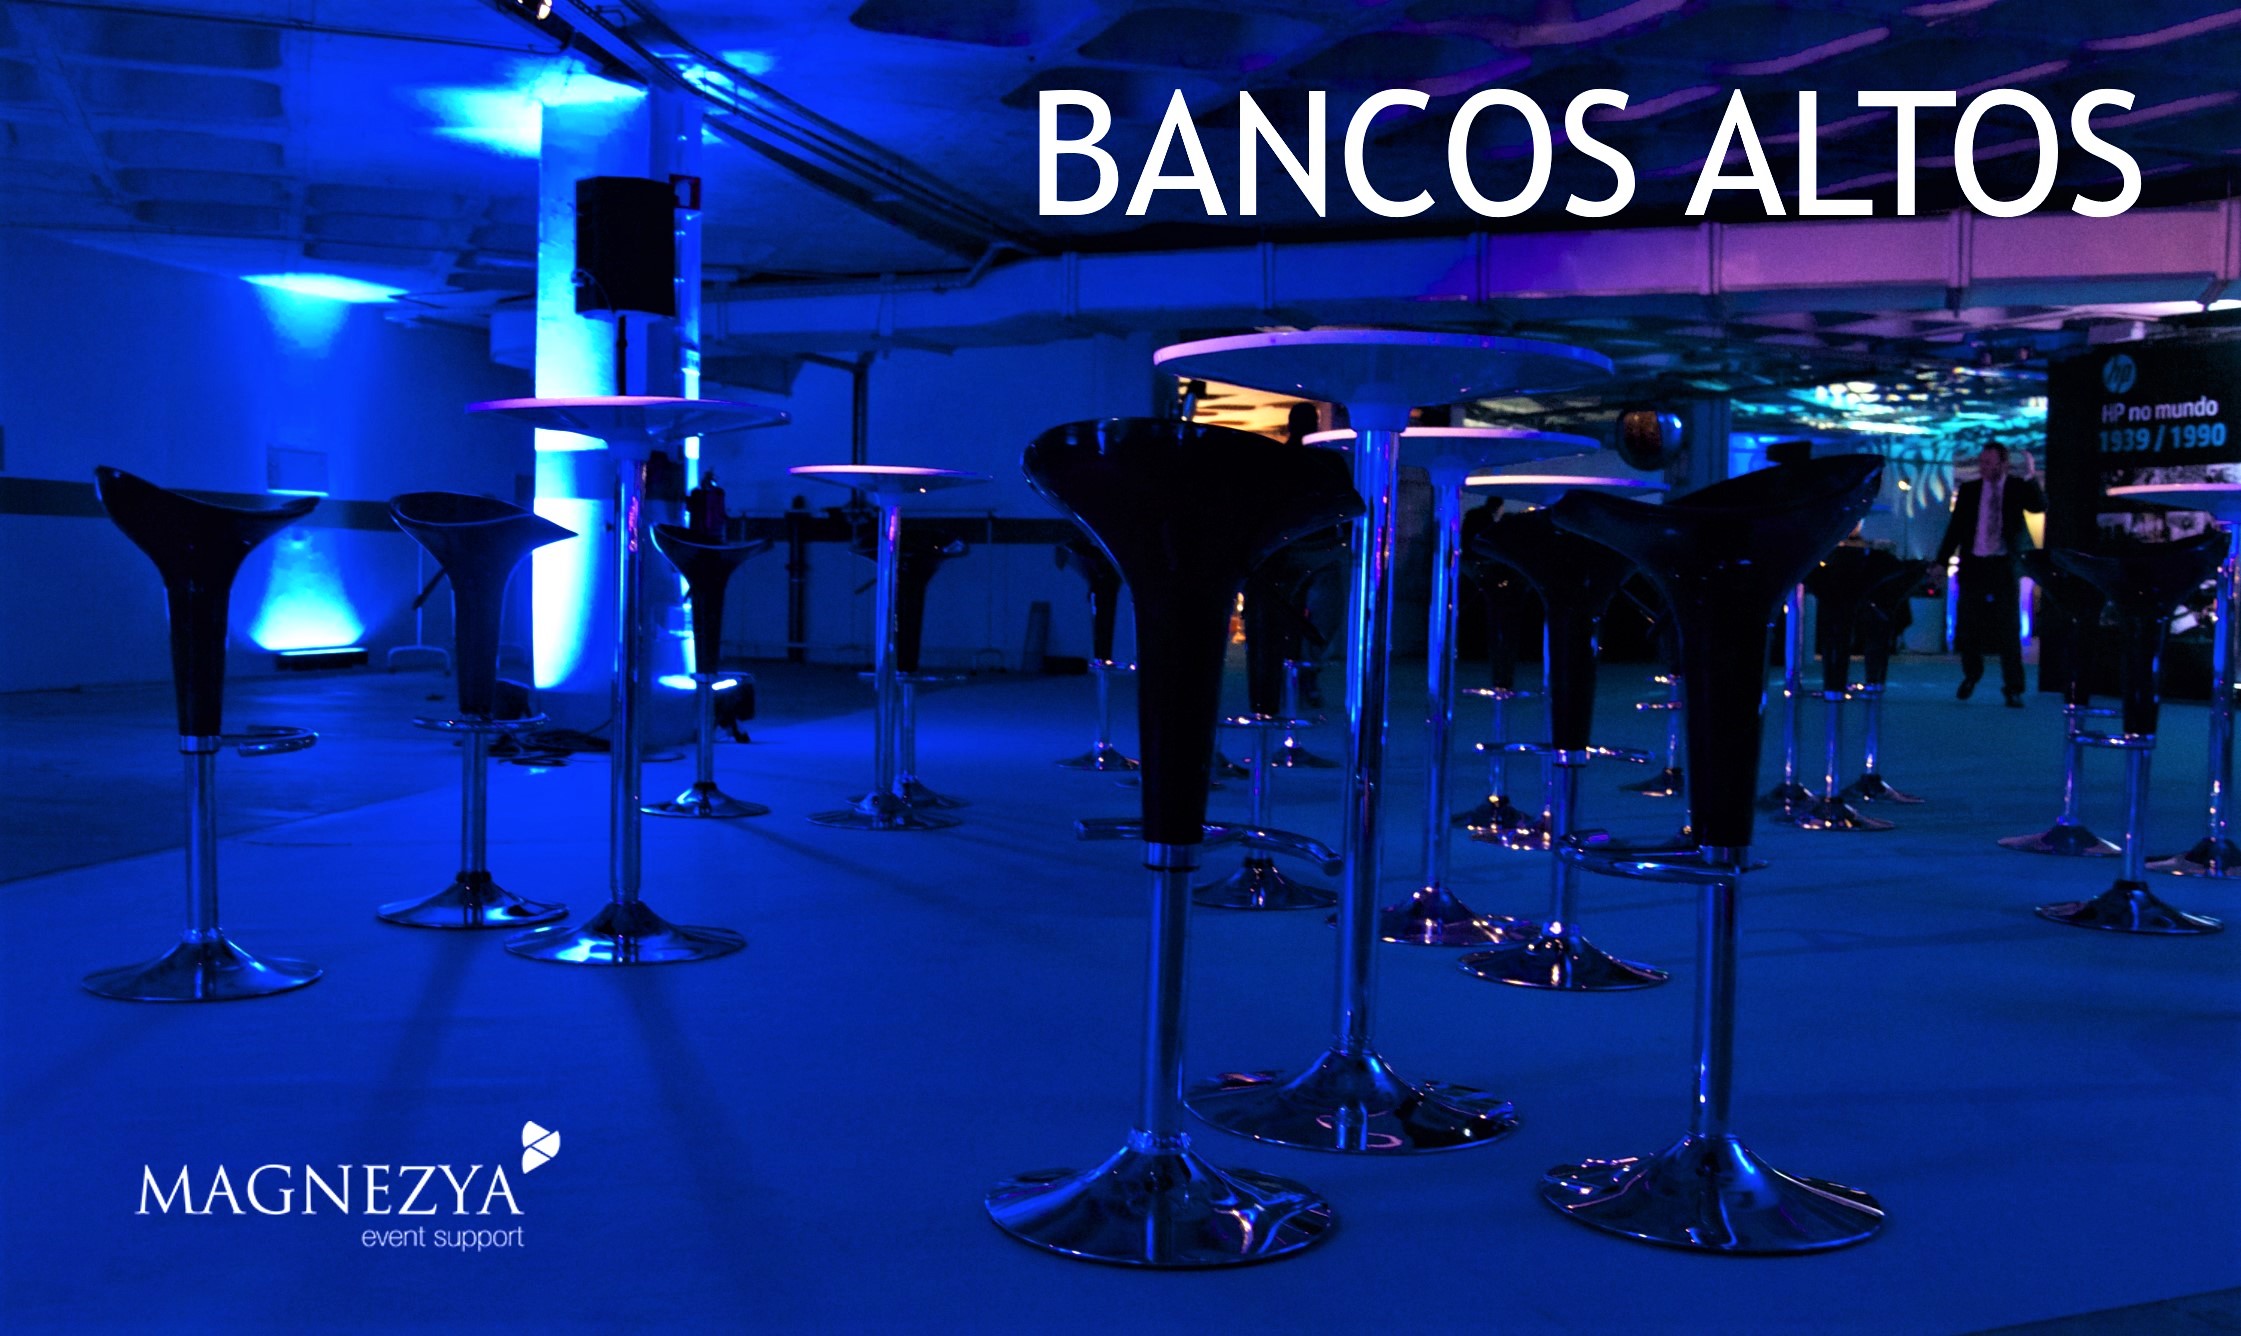 Aluguer Bancos Altos. Magnezya Event Support